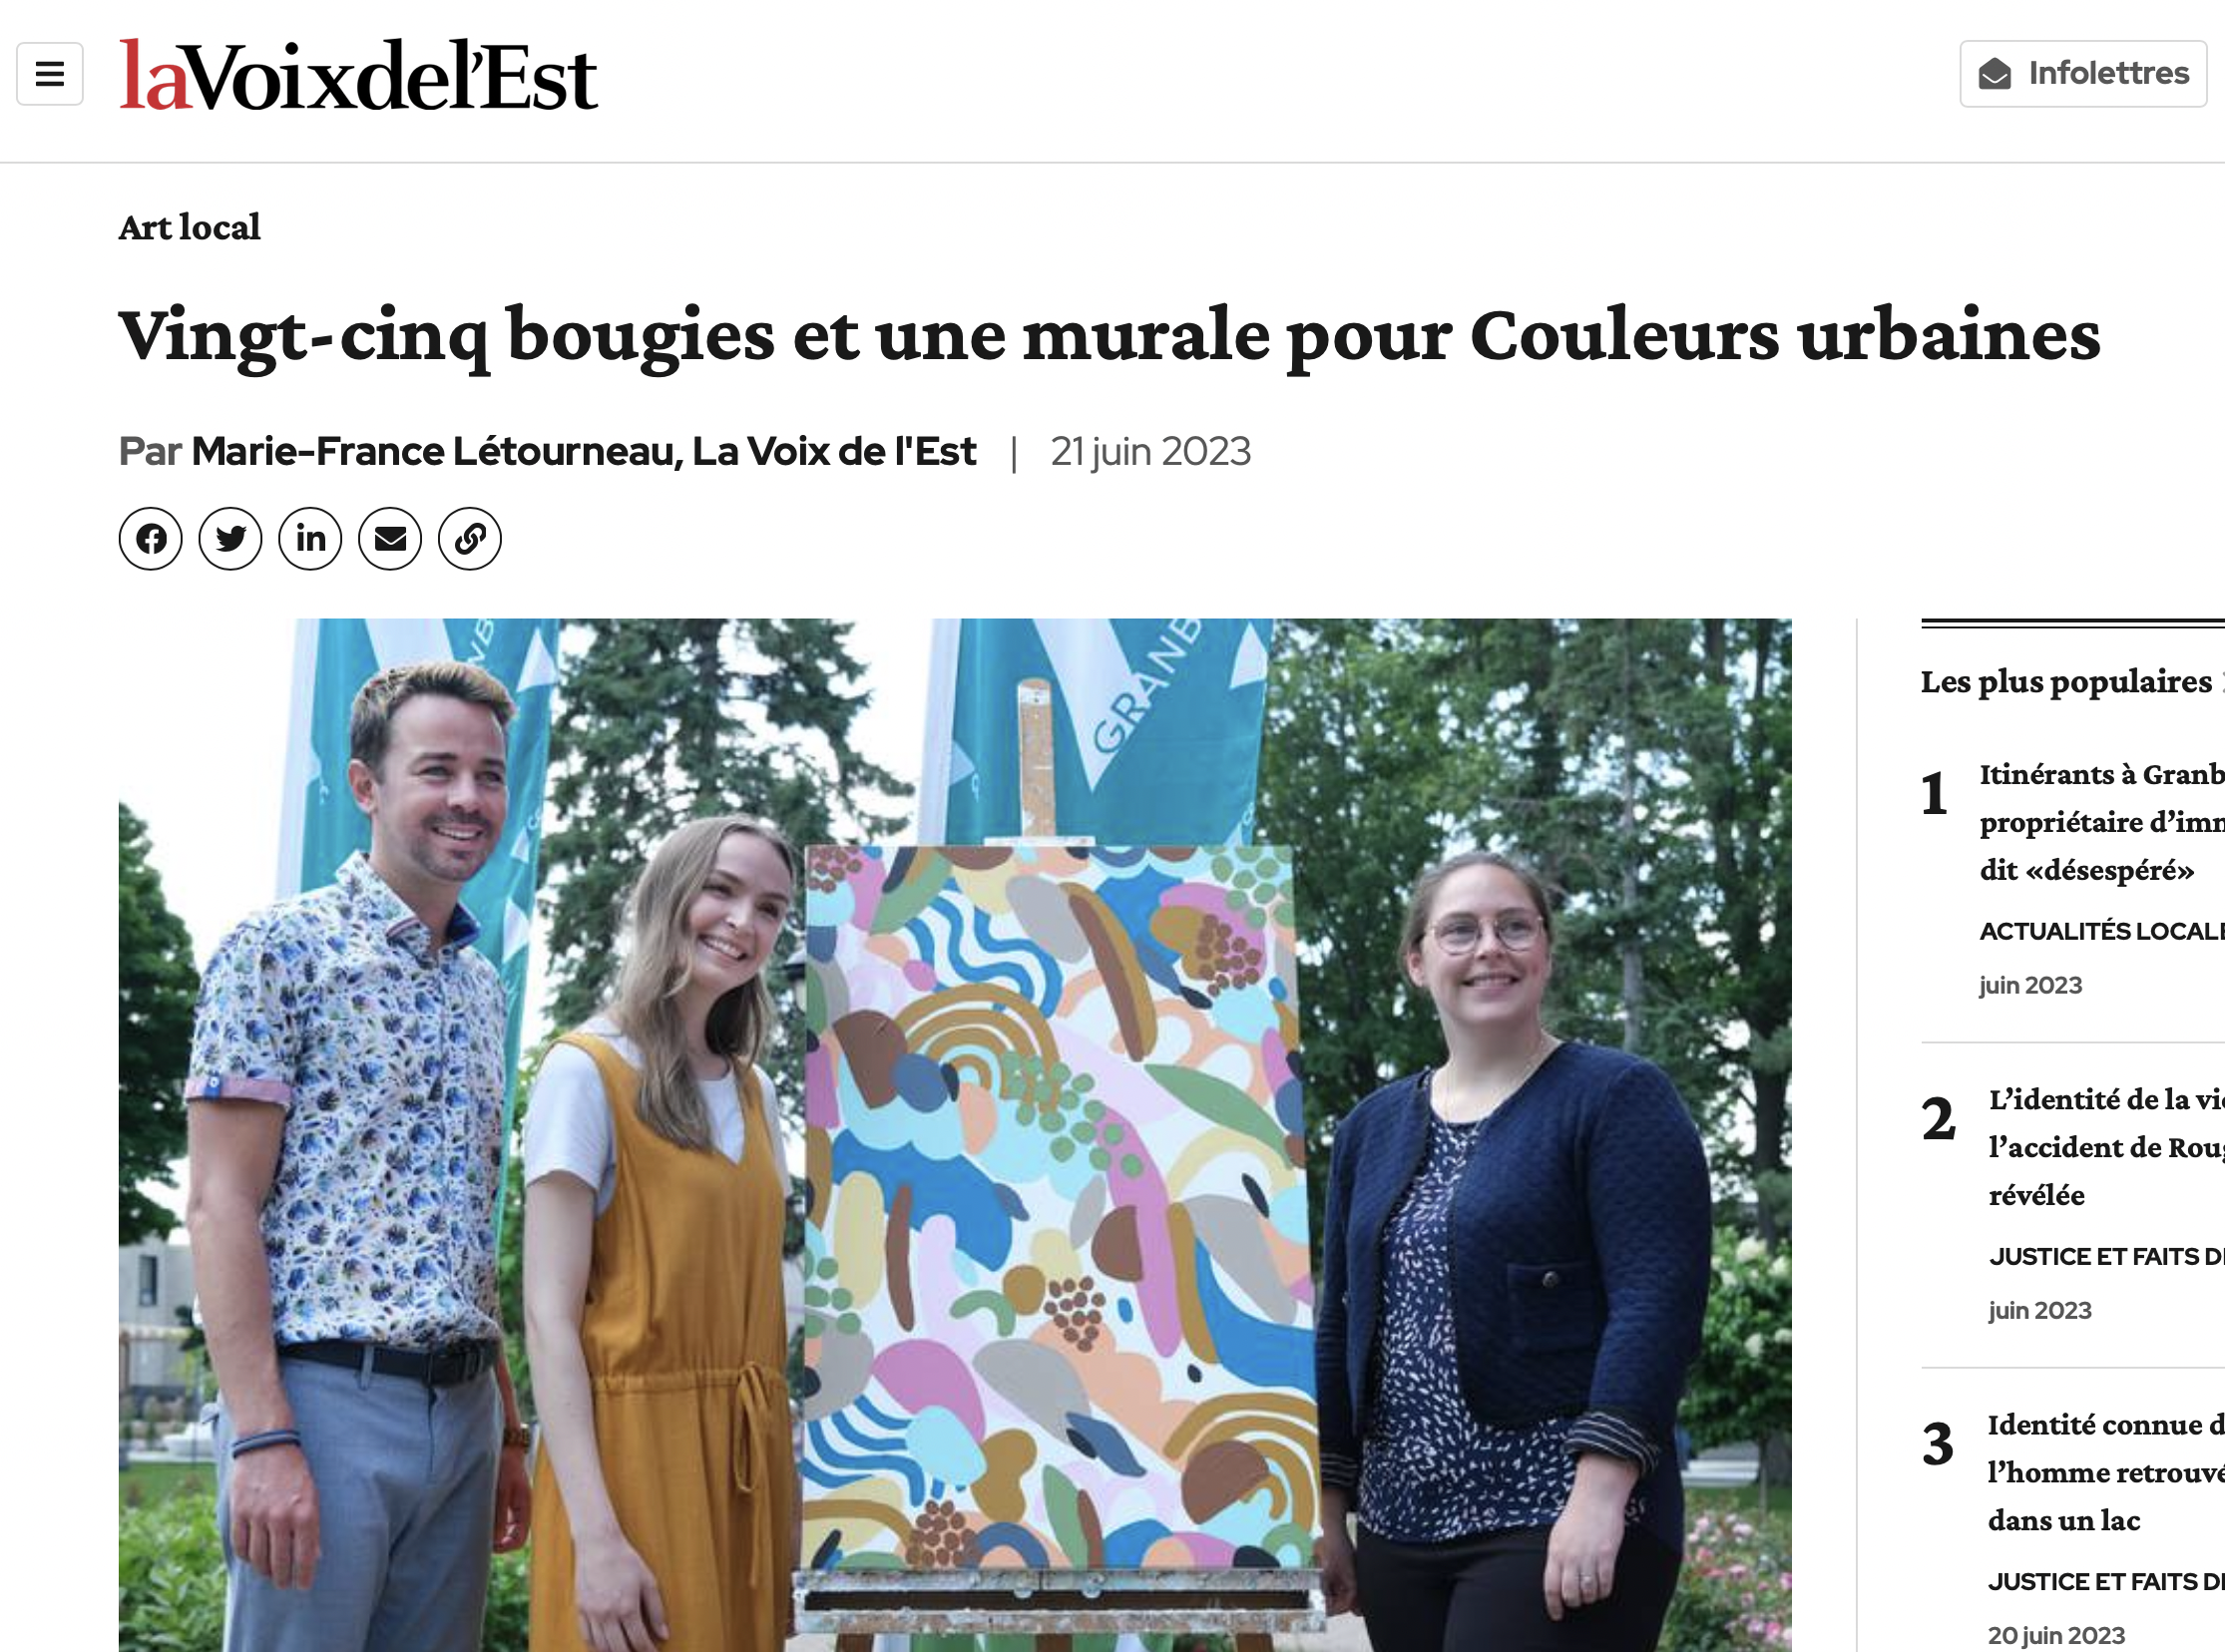  Vingt-cinq bougies et une murale pour Couleurs urbaines . Marie-France Létourneau,   La Voix de l’Est , 21 Juin 2023. L’article complet  ici.    